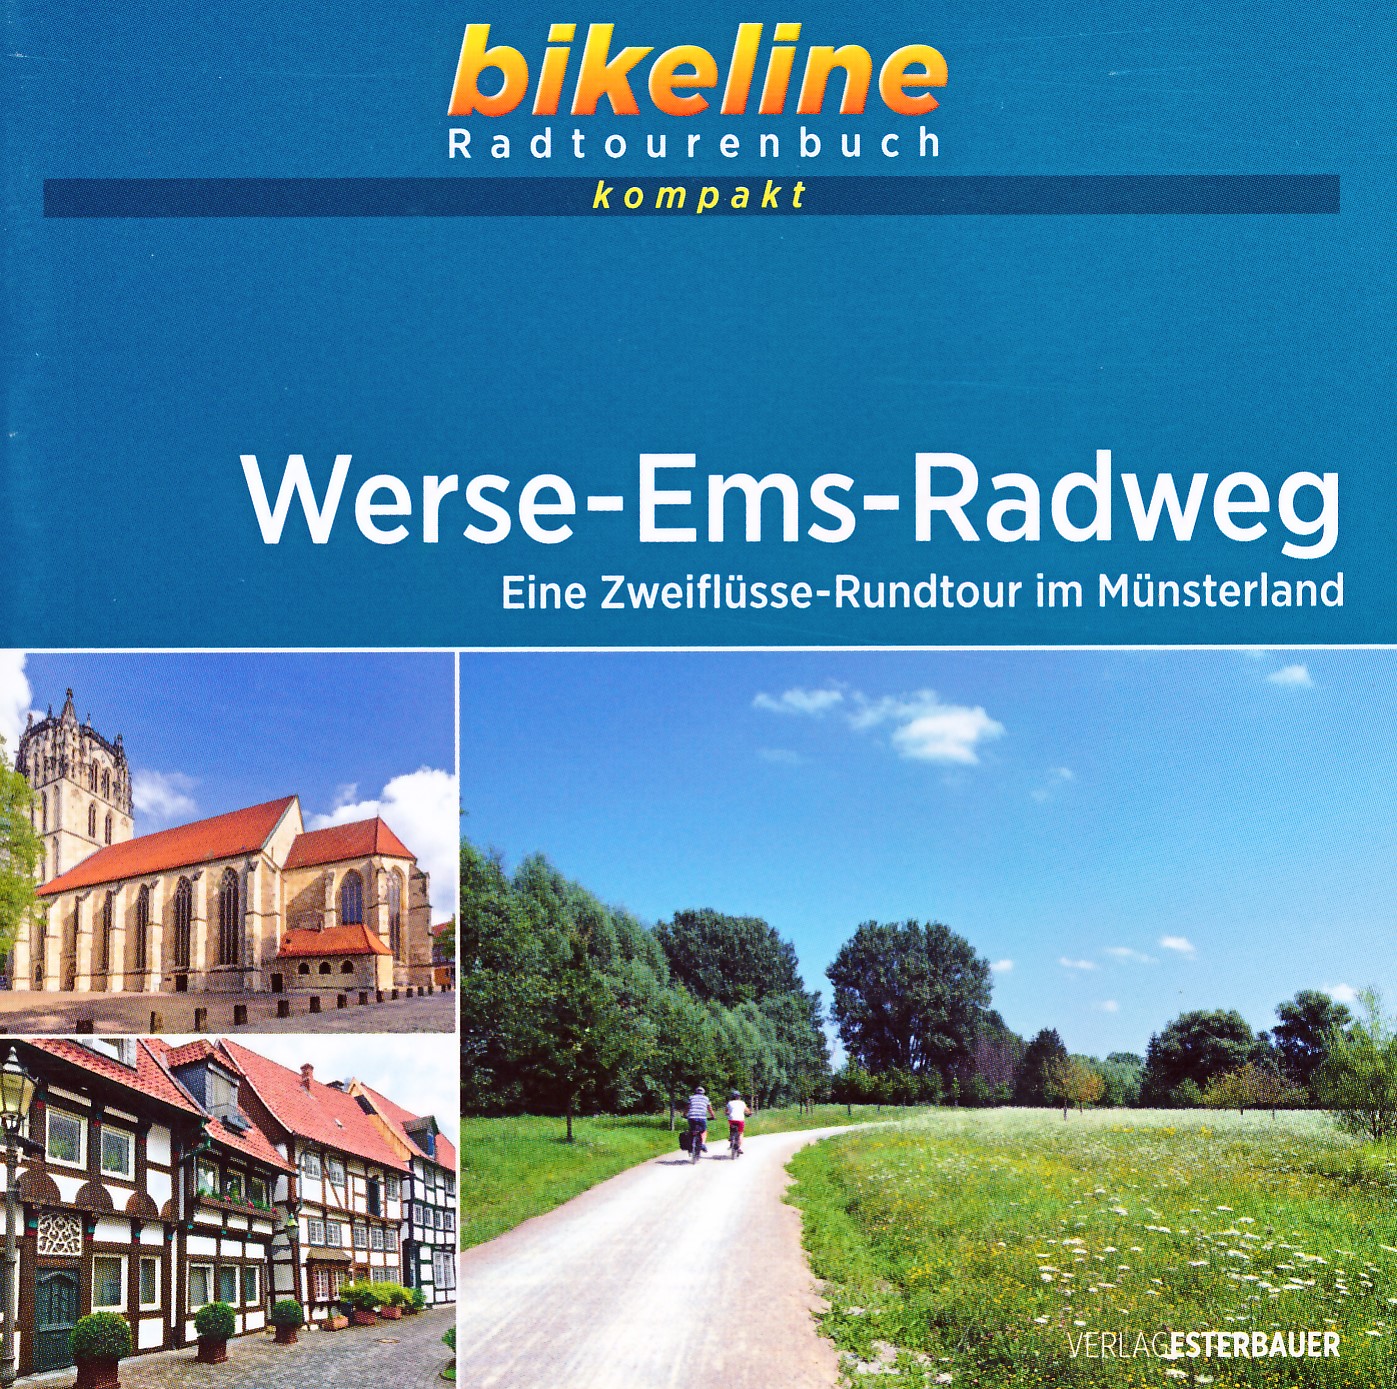 Online bestellen: Fietsgids Bikeline Radtourenbuch kompakt Werse-Ems-Radweg | Esterbauer